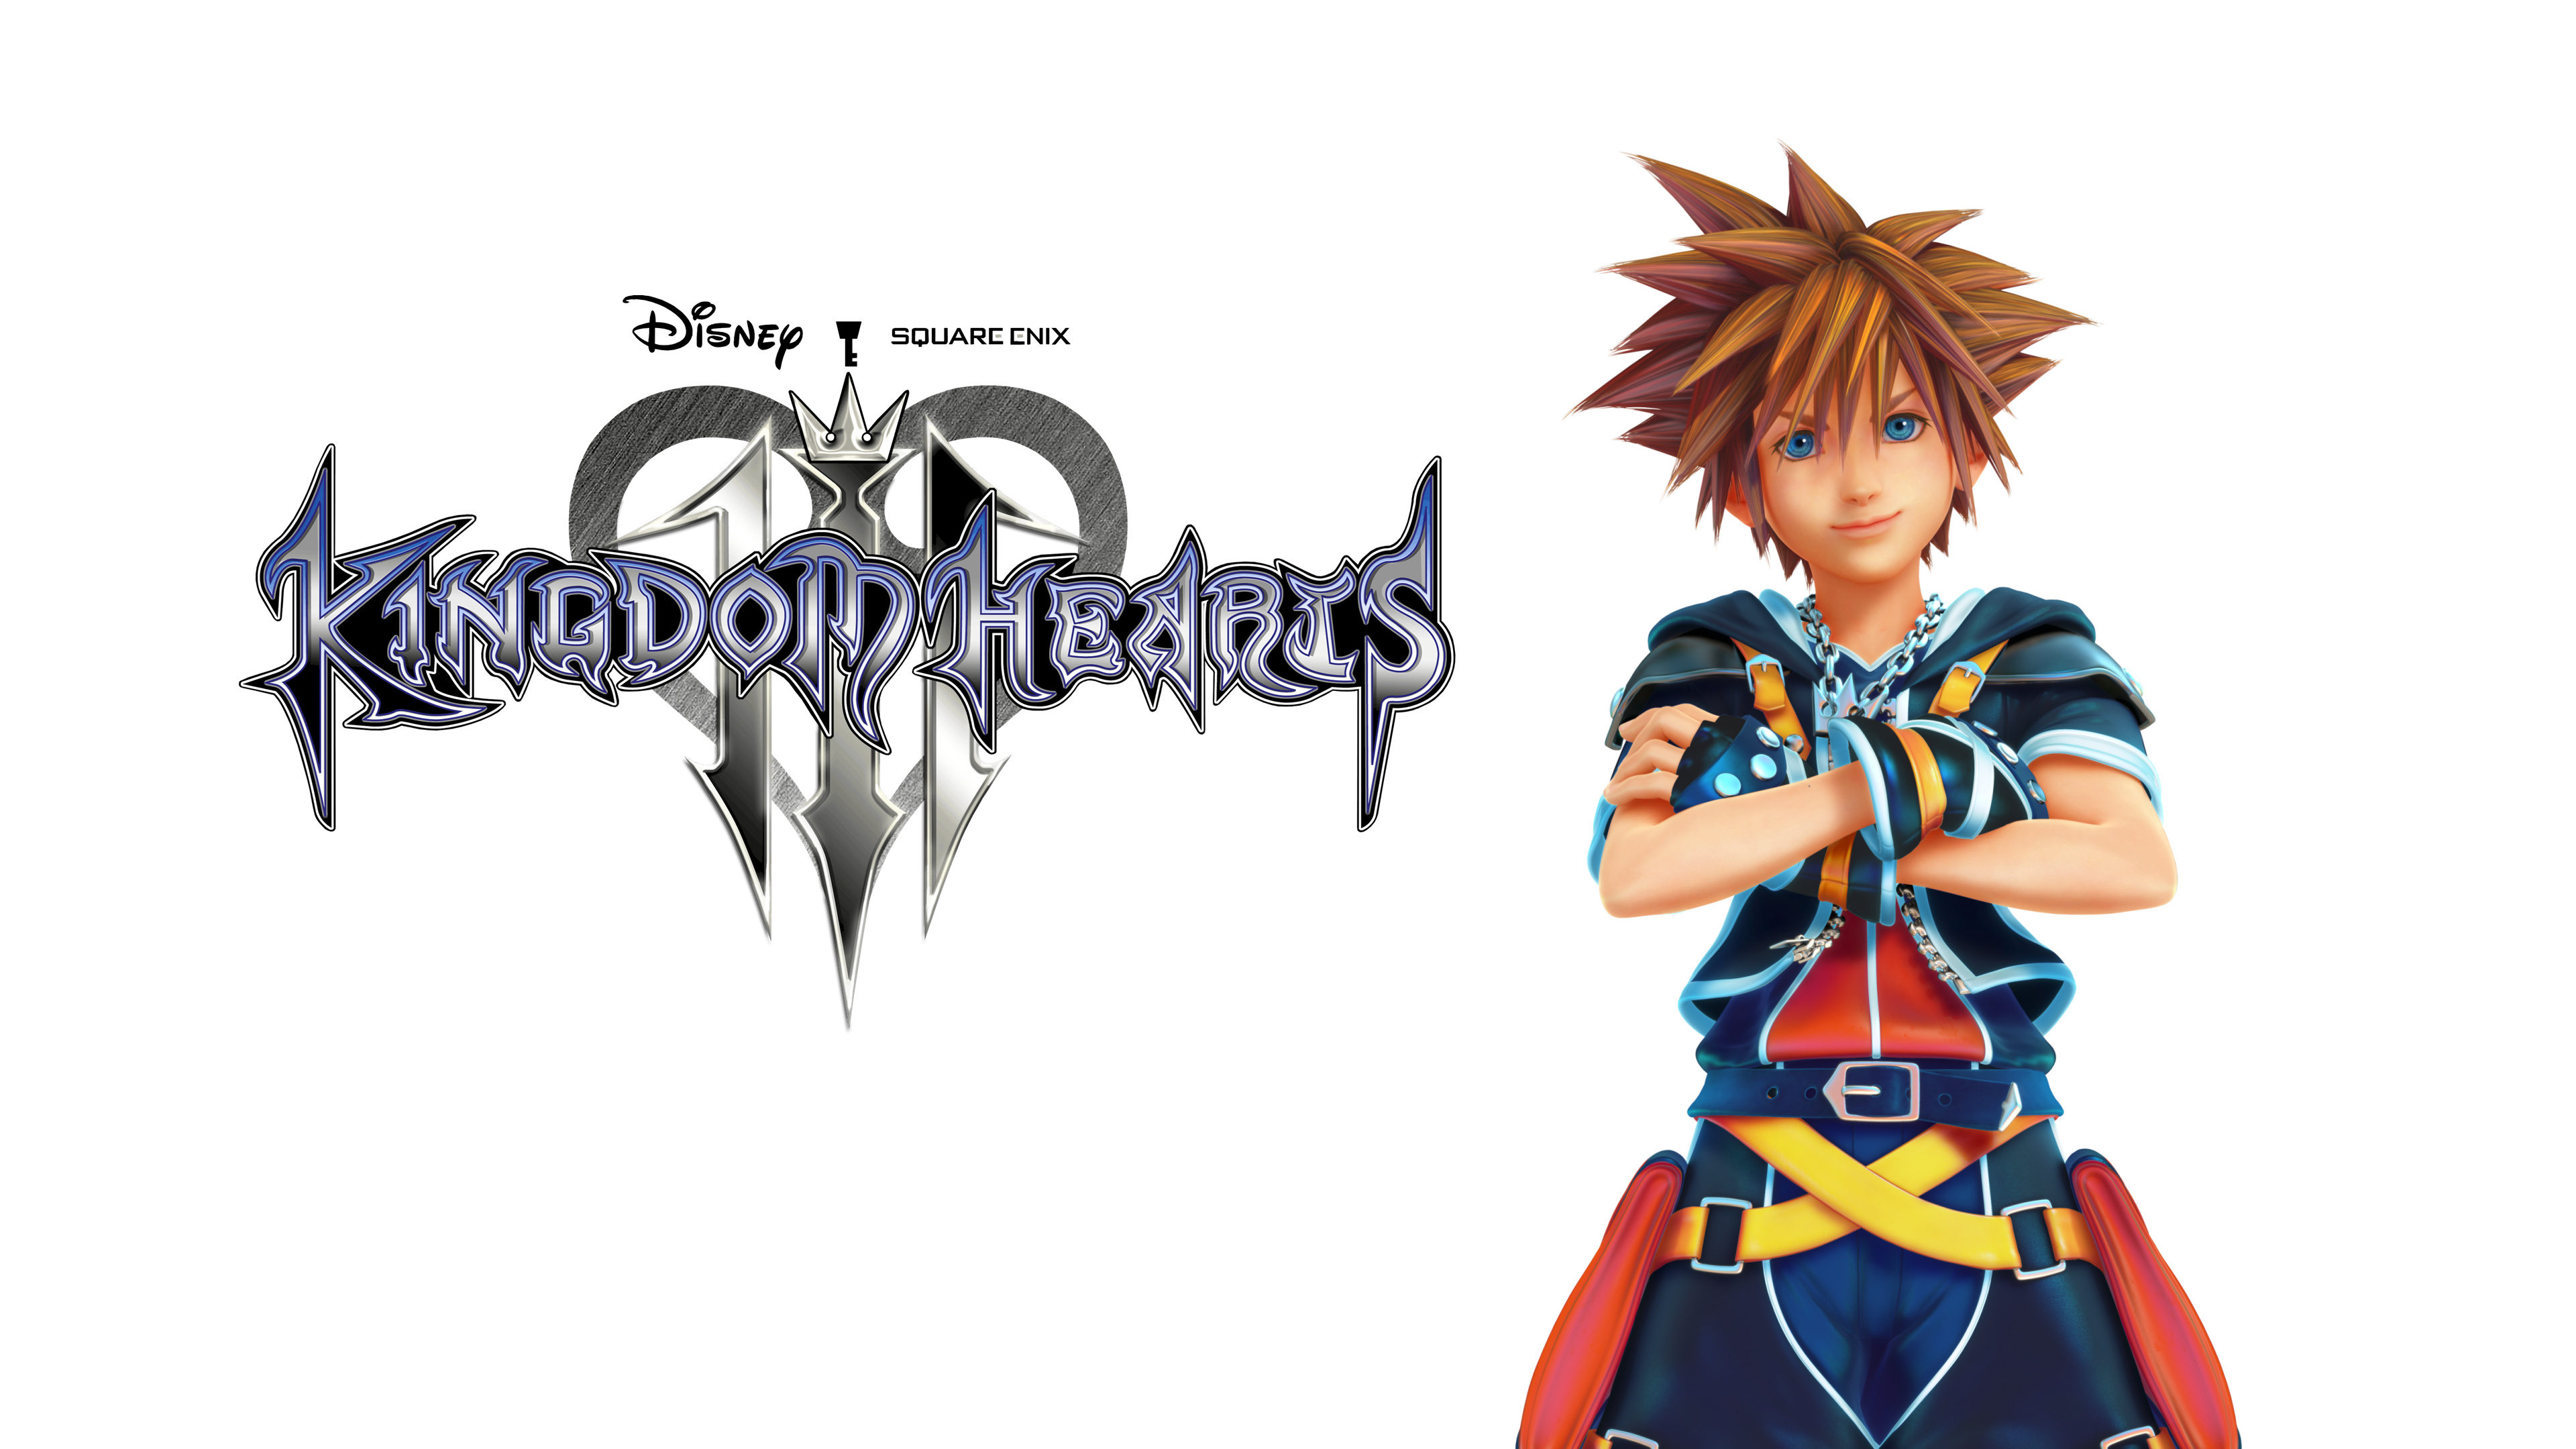 Kingdom Hearts III wallpaper, Sora fan art, HD quality, Free download, 3840x2160 4K Desktop